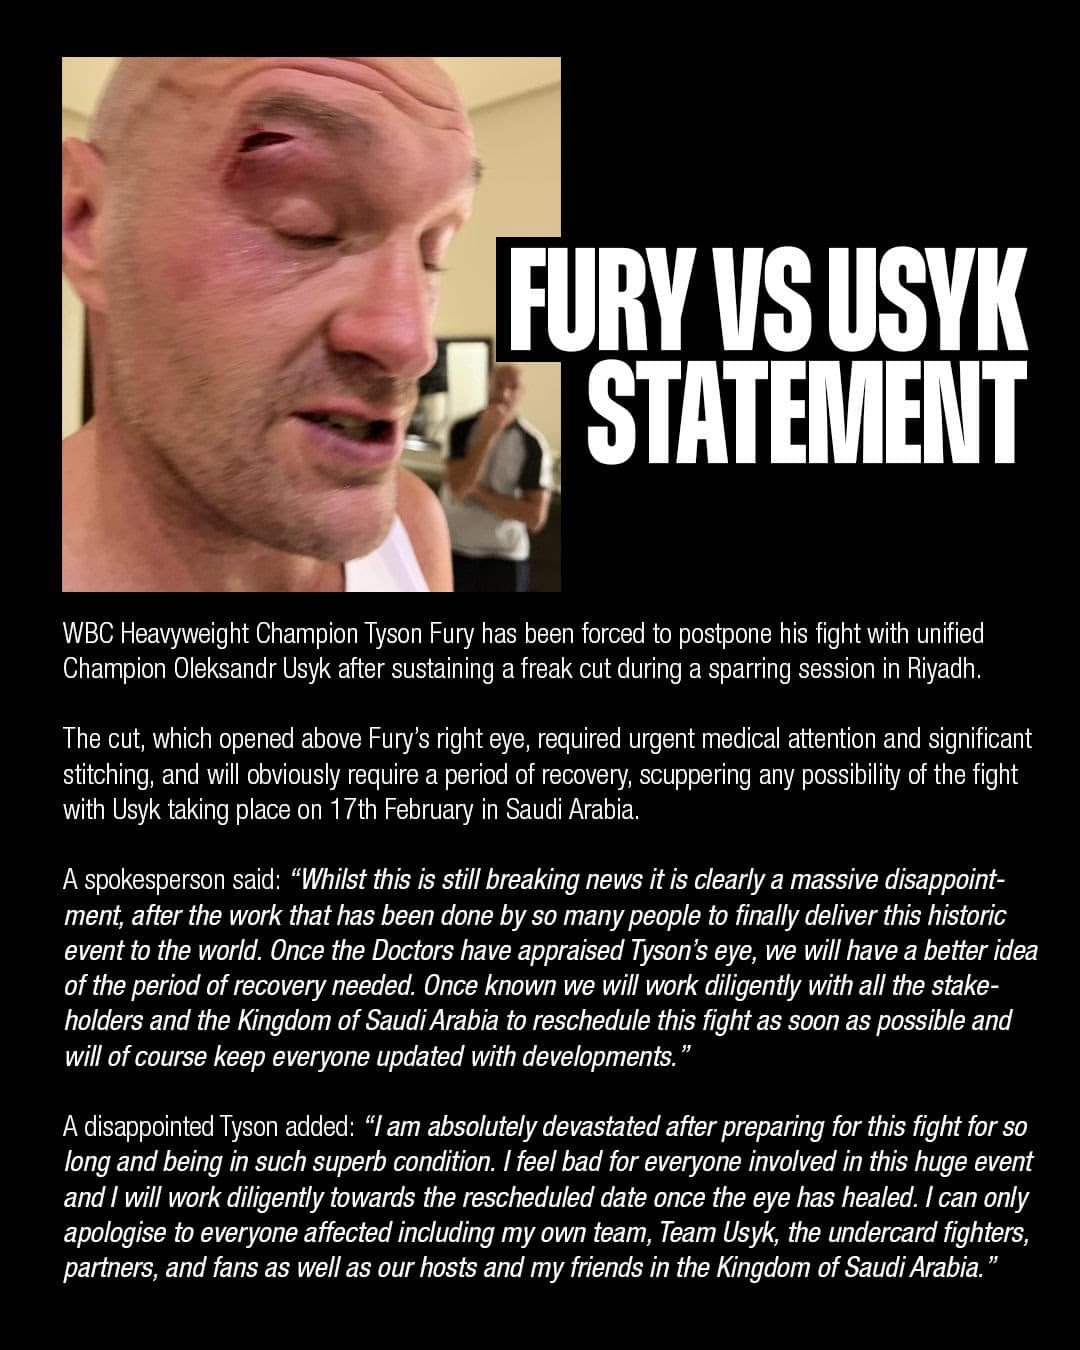 Image: Tyson Fury Injury Postpones Undisputed Title Fight against Oleksandr Usyk